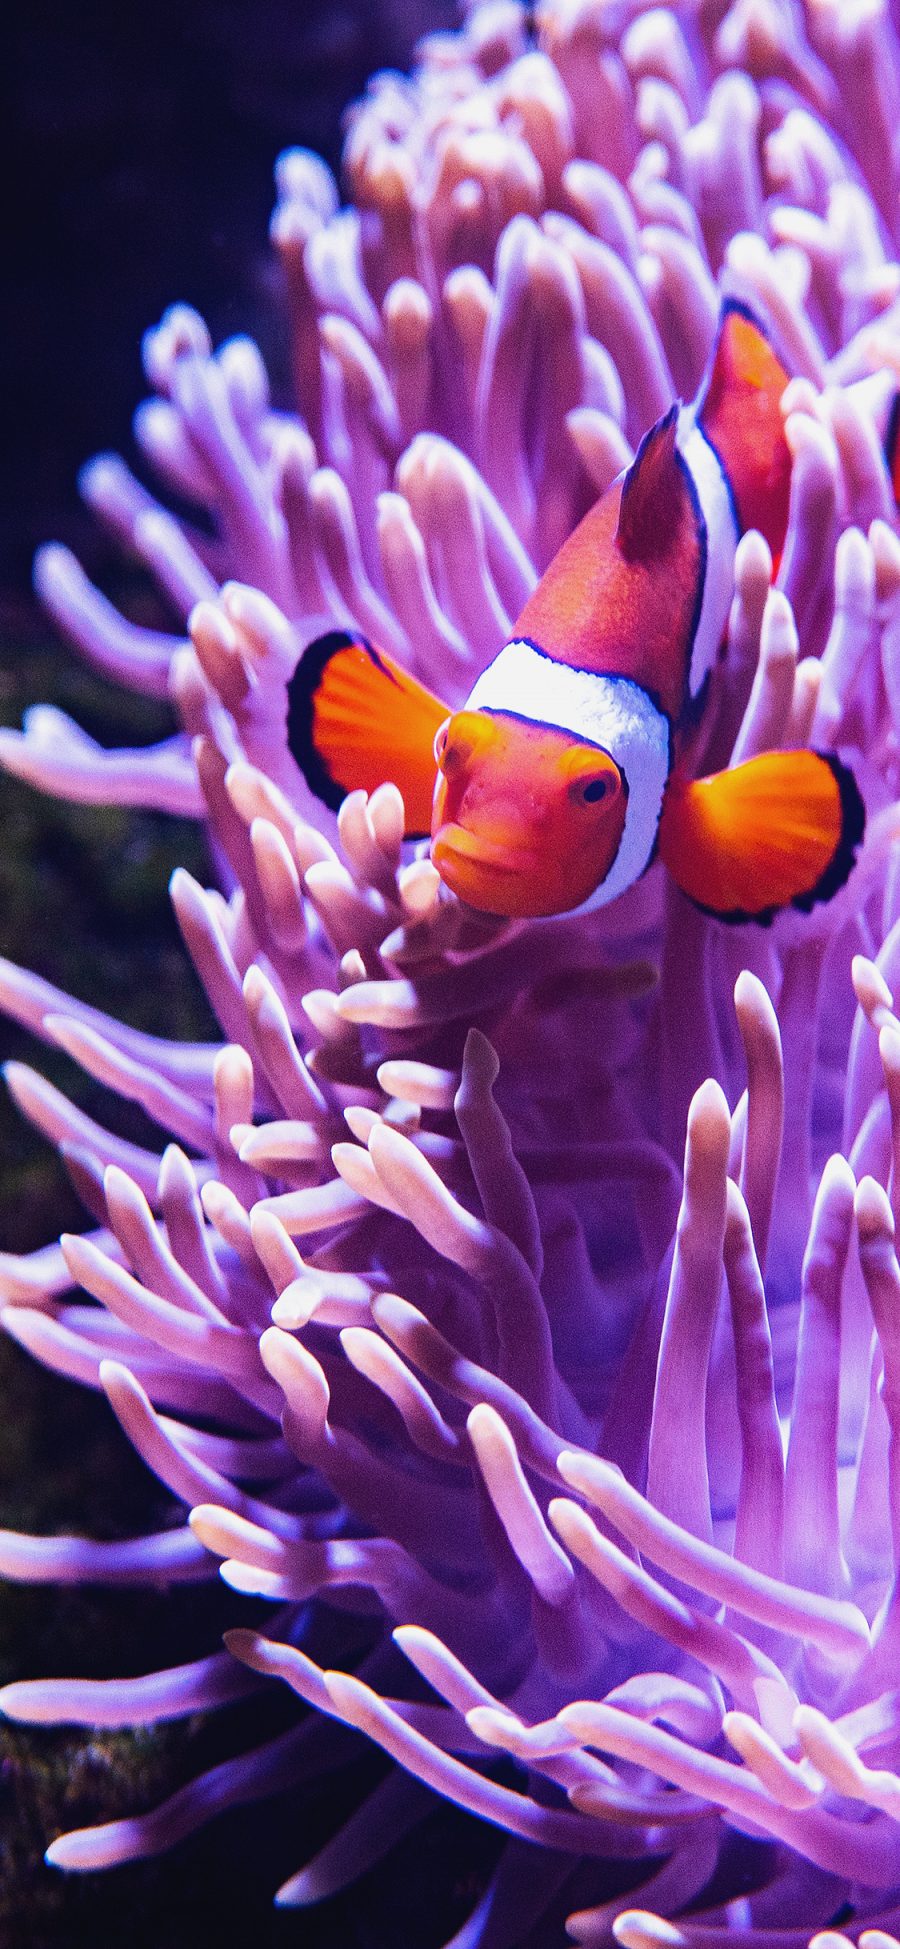 [2436×1125]鱼类 小丑鱼 海底 珊瑚虫  珊瑚 苹果手机壁纸图片